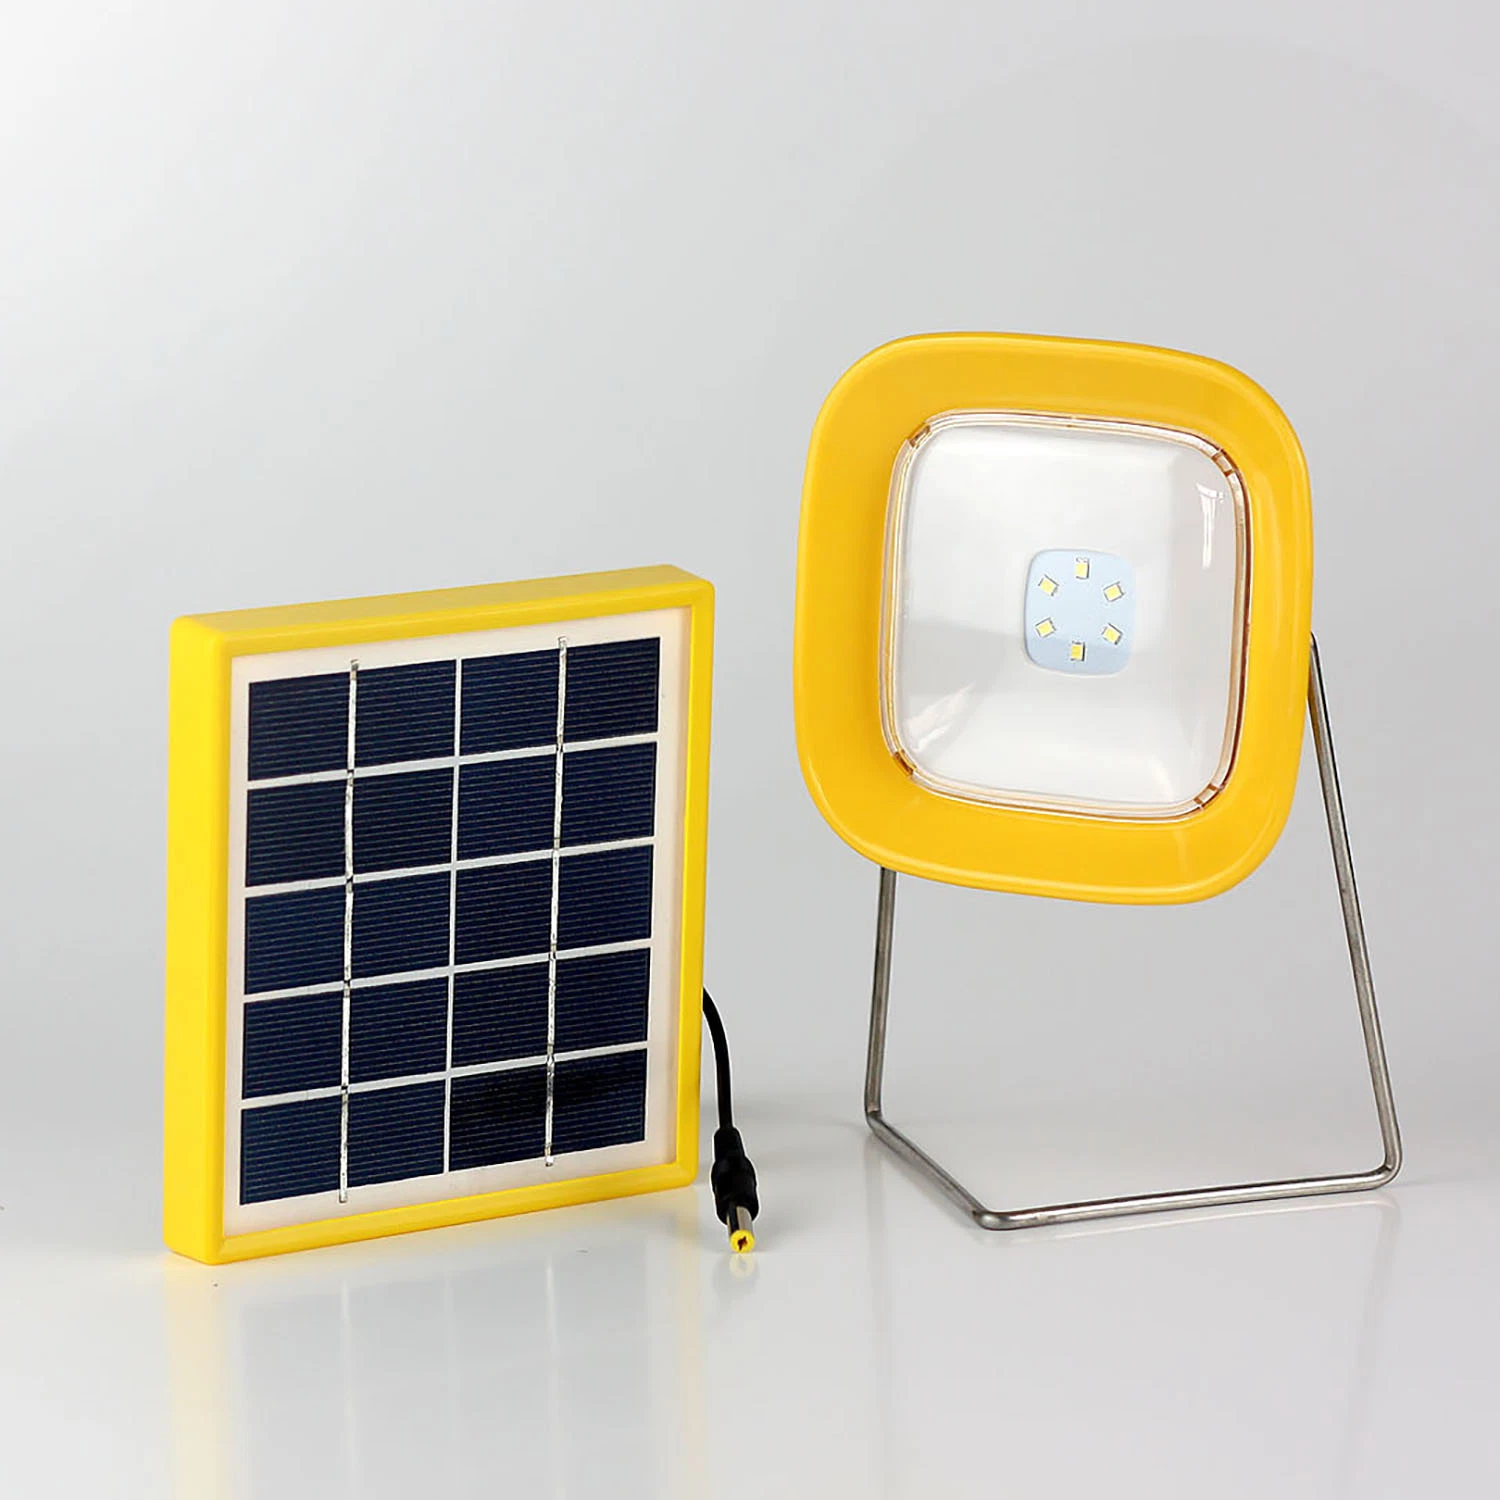 2W des panneaux solaires d'éclairage LED lampe pour lire et étudier avec chargeur mobile